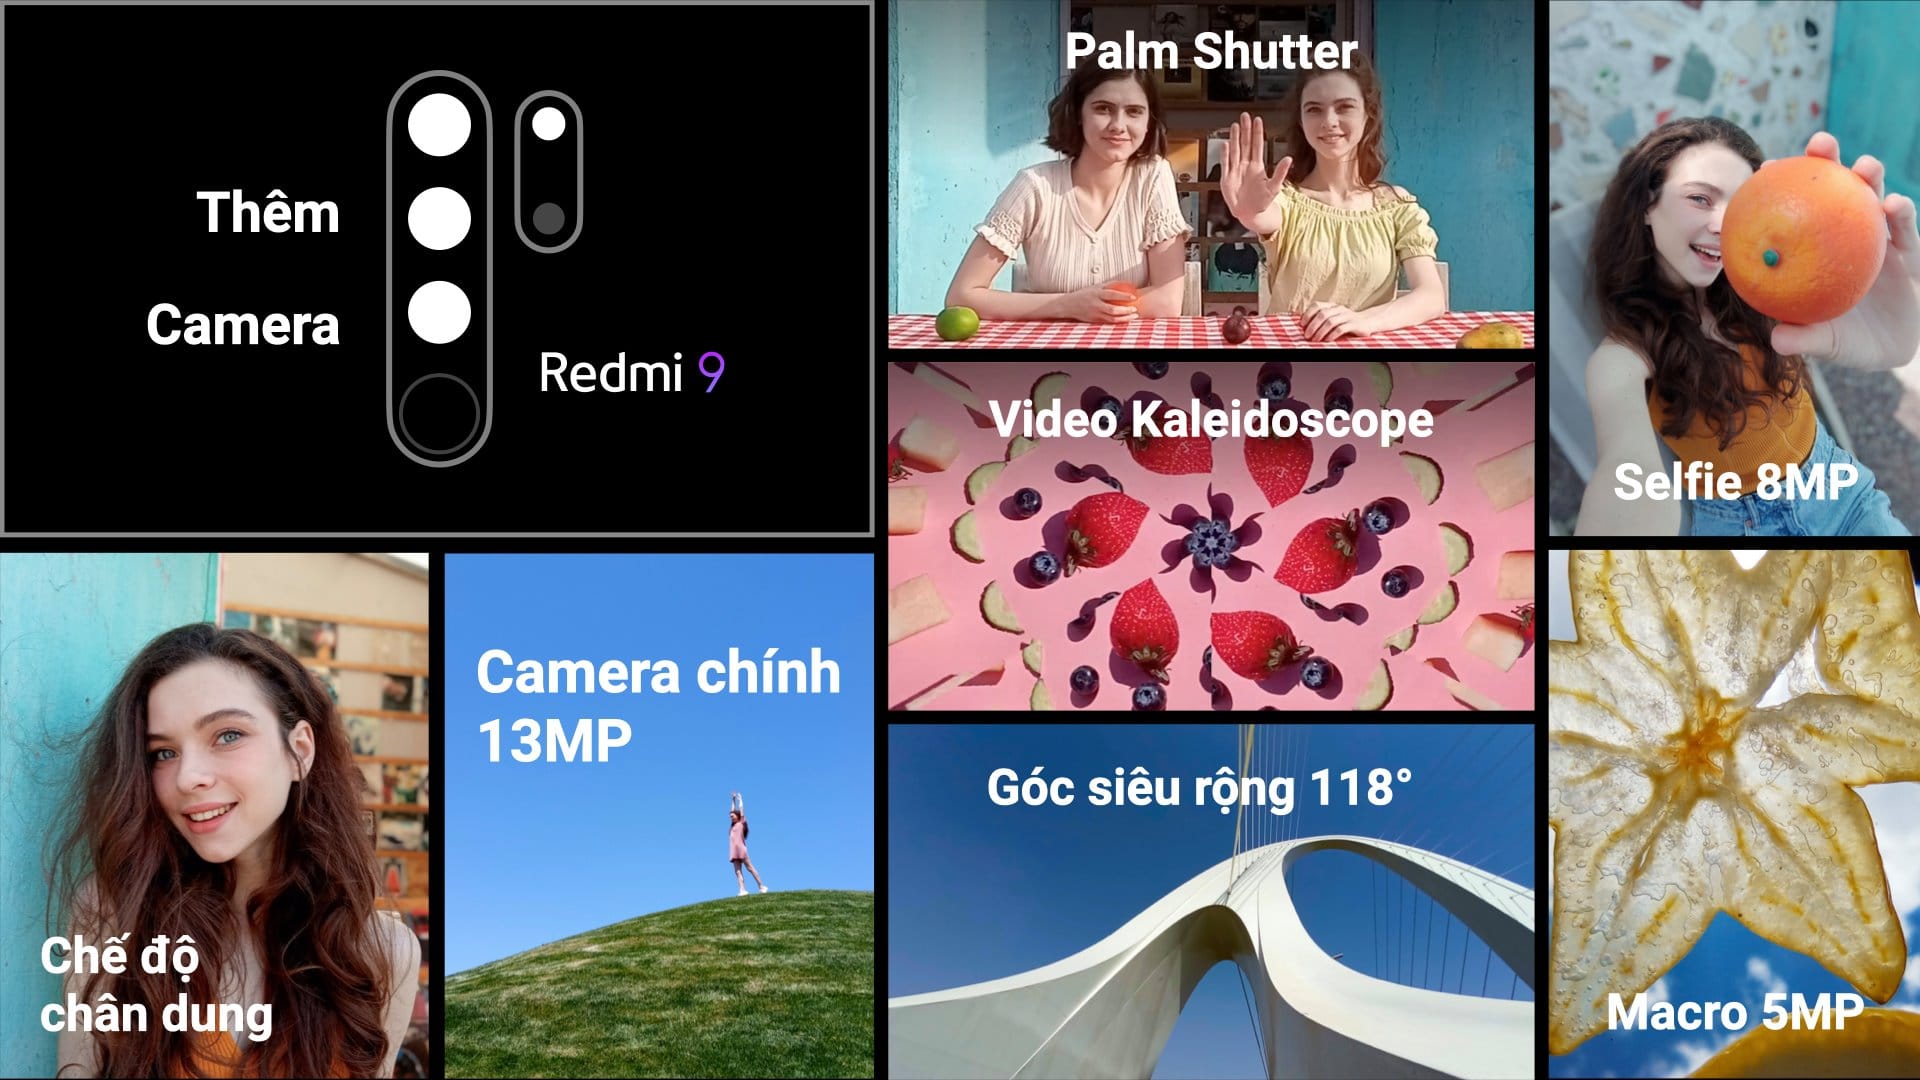 Xiaomi Redmi 9 ra mắt, "bom tấn" cho phân khúc phổ thông, giá từ 3,590,000 VND